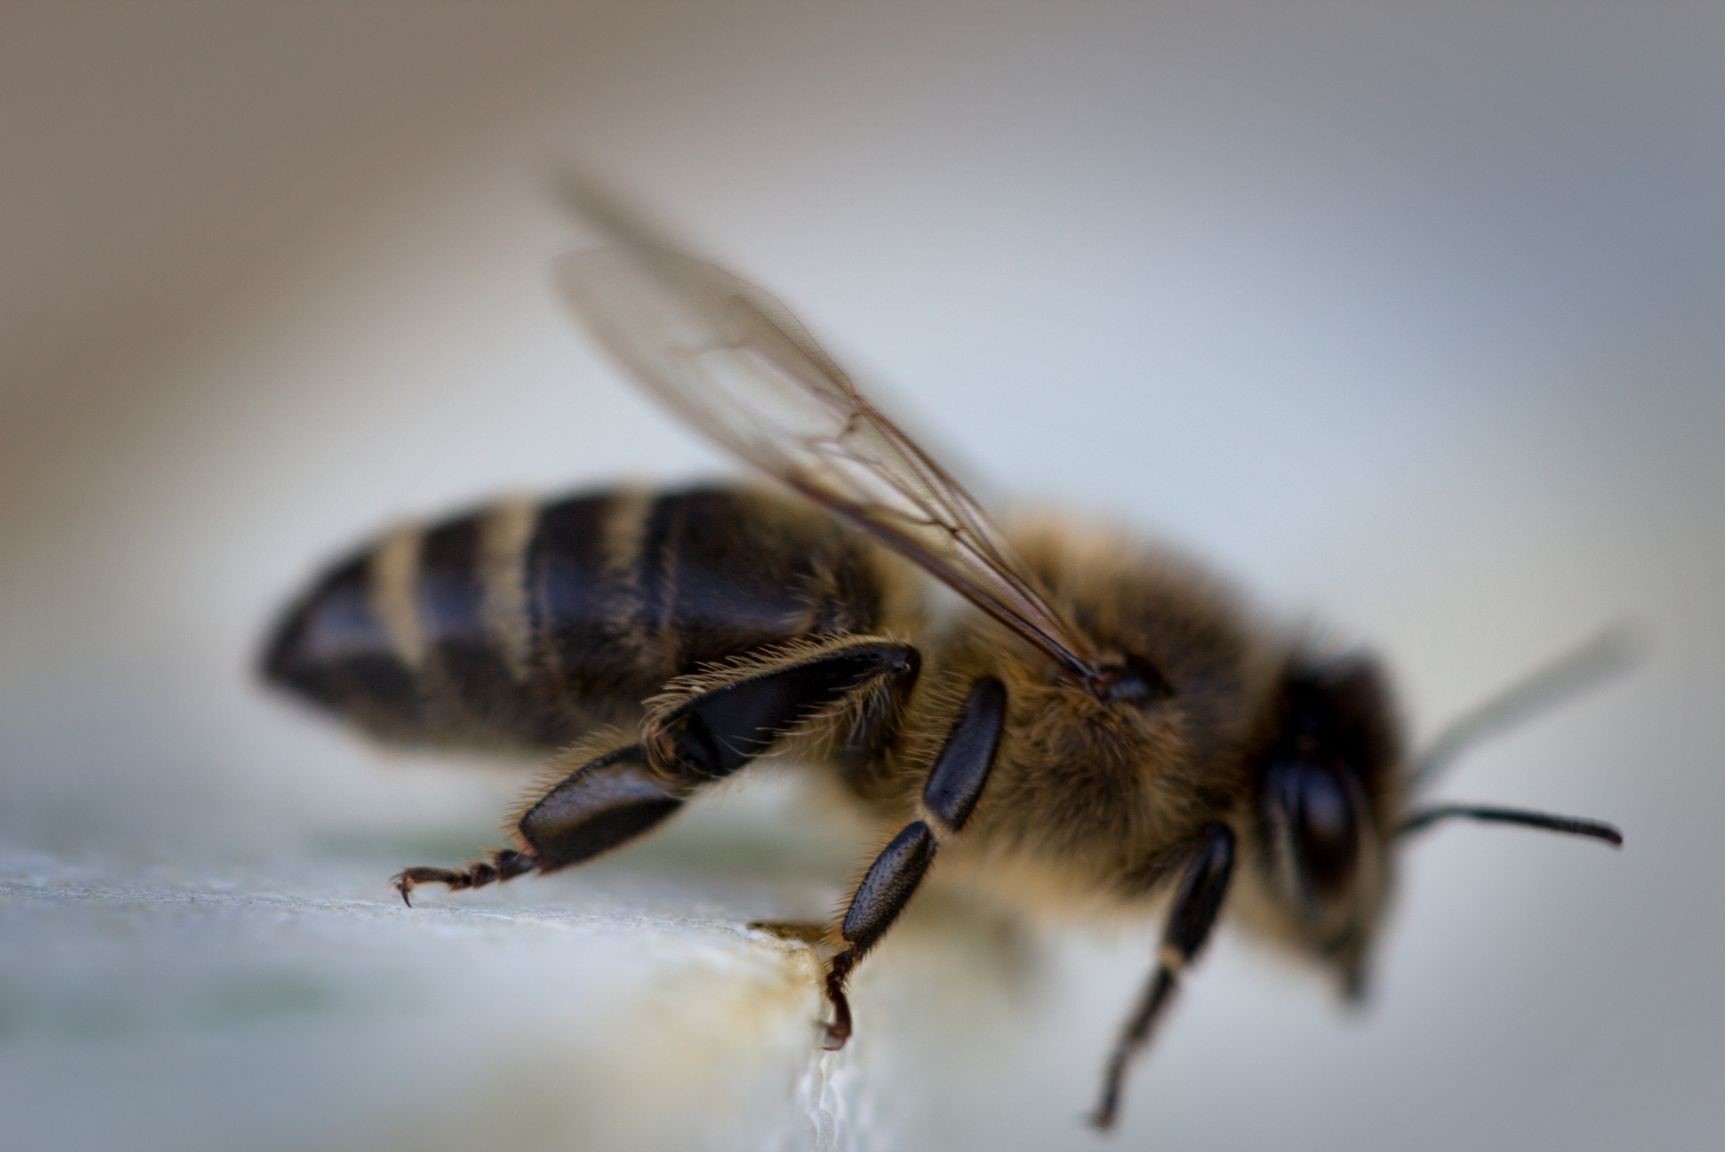 Factors of Decline in Honeybees